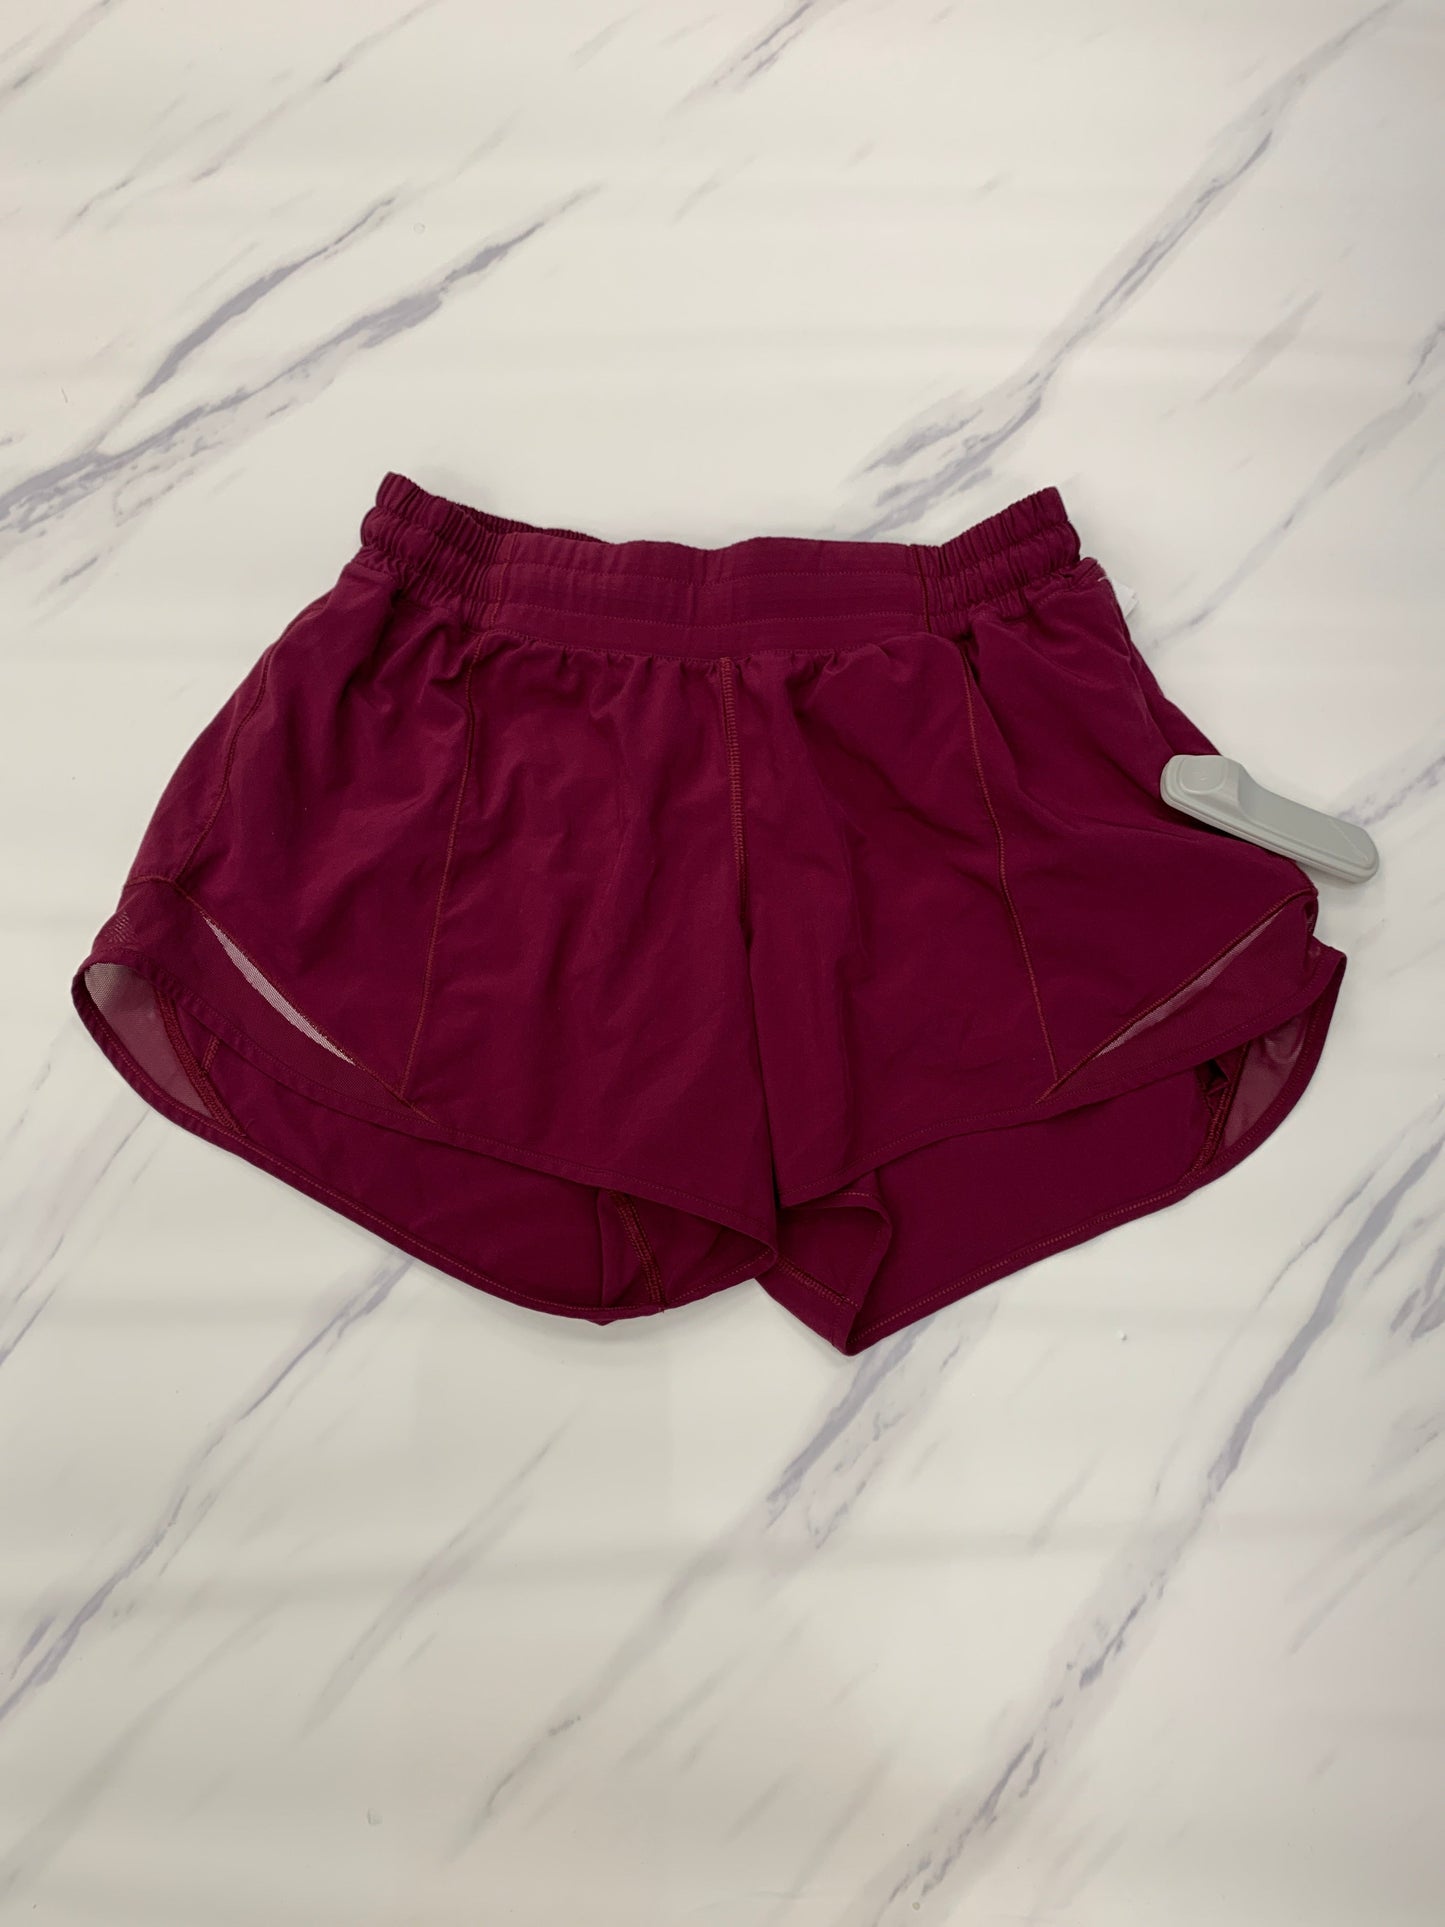 Athletic Shorts Lululemon, Size 8